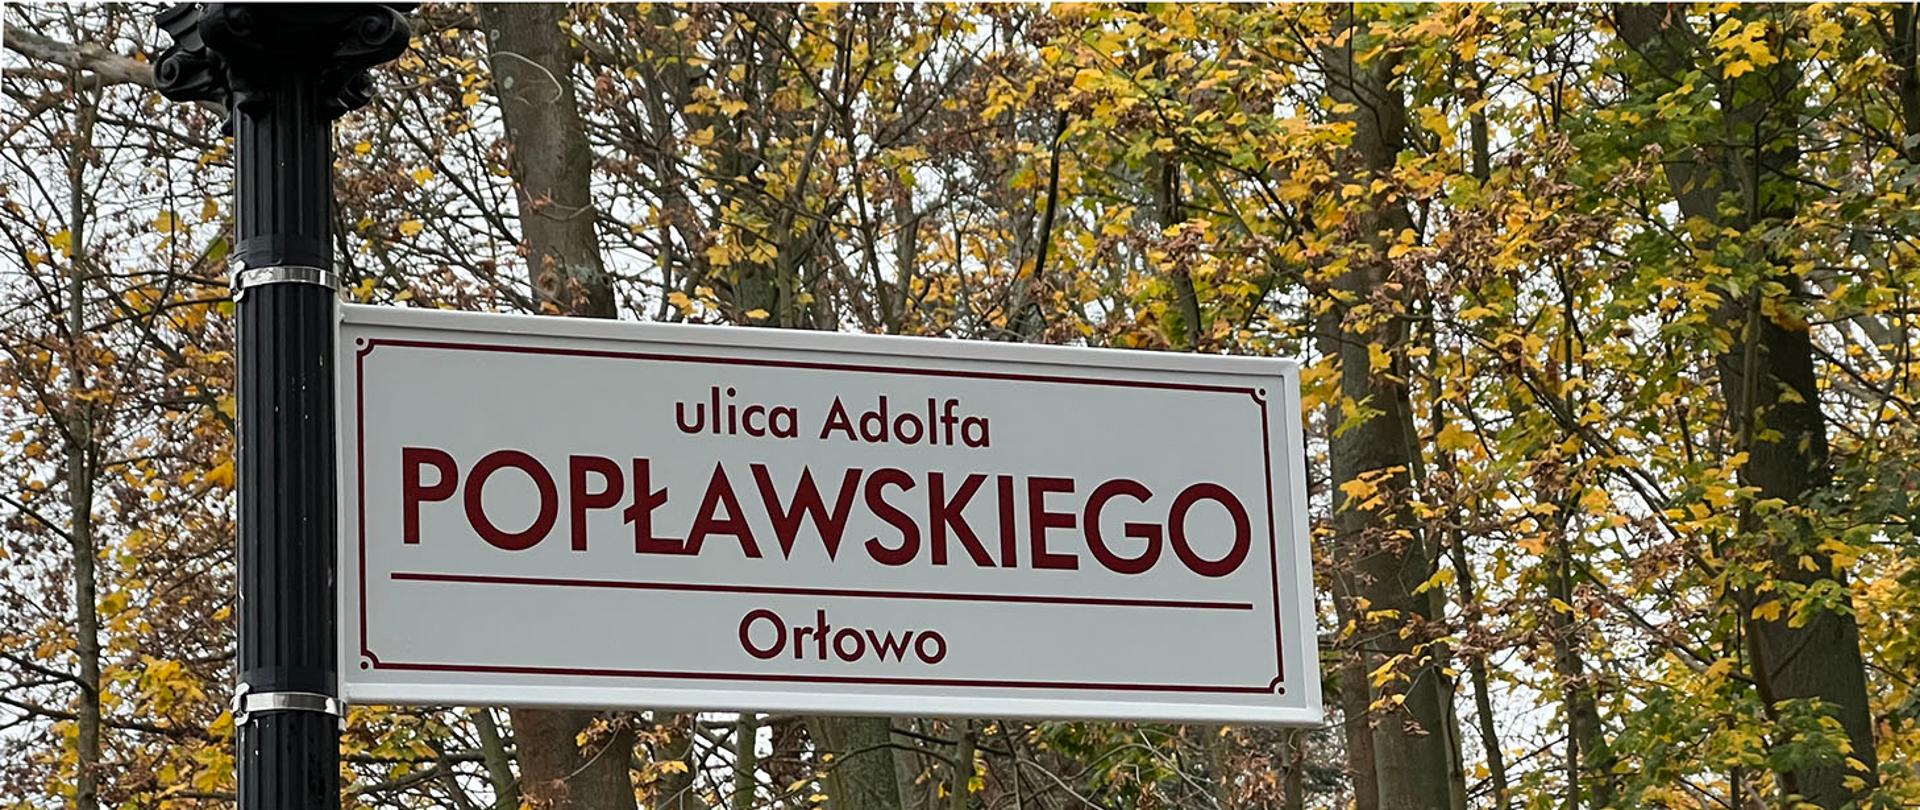 Drogowskaz na słupie z nazwą ulicy Adolfa Popławskiego